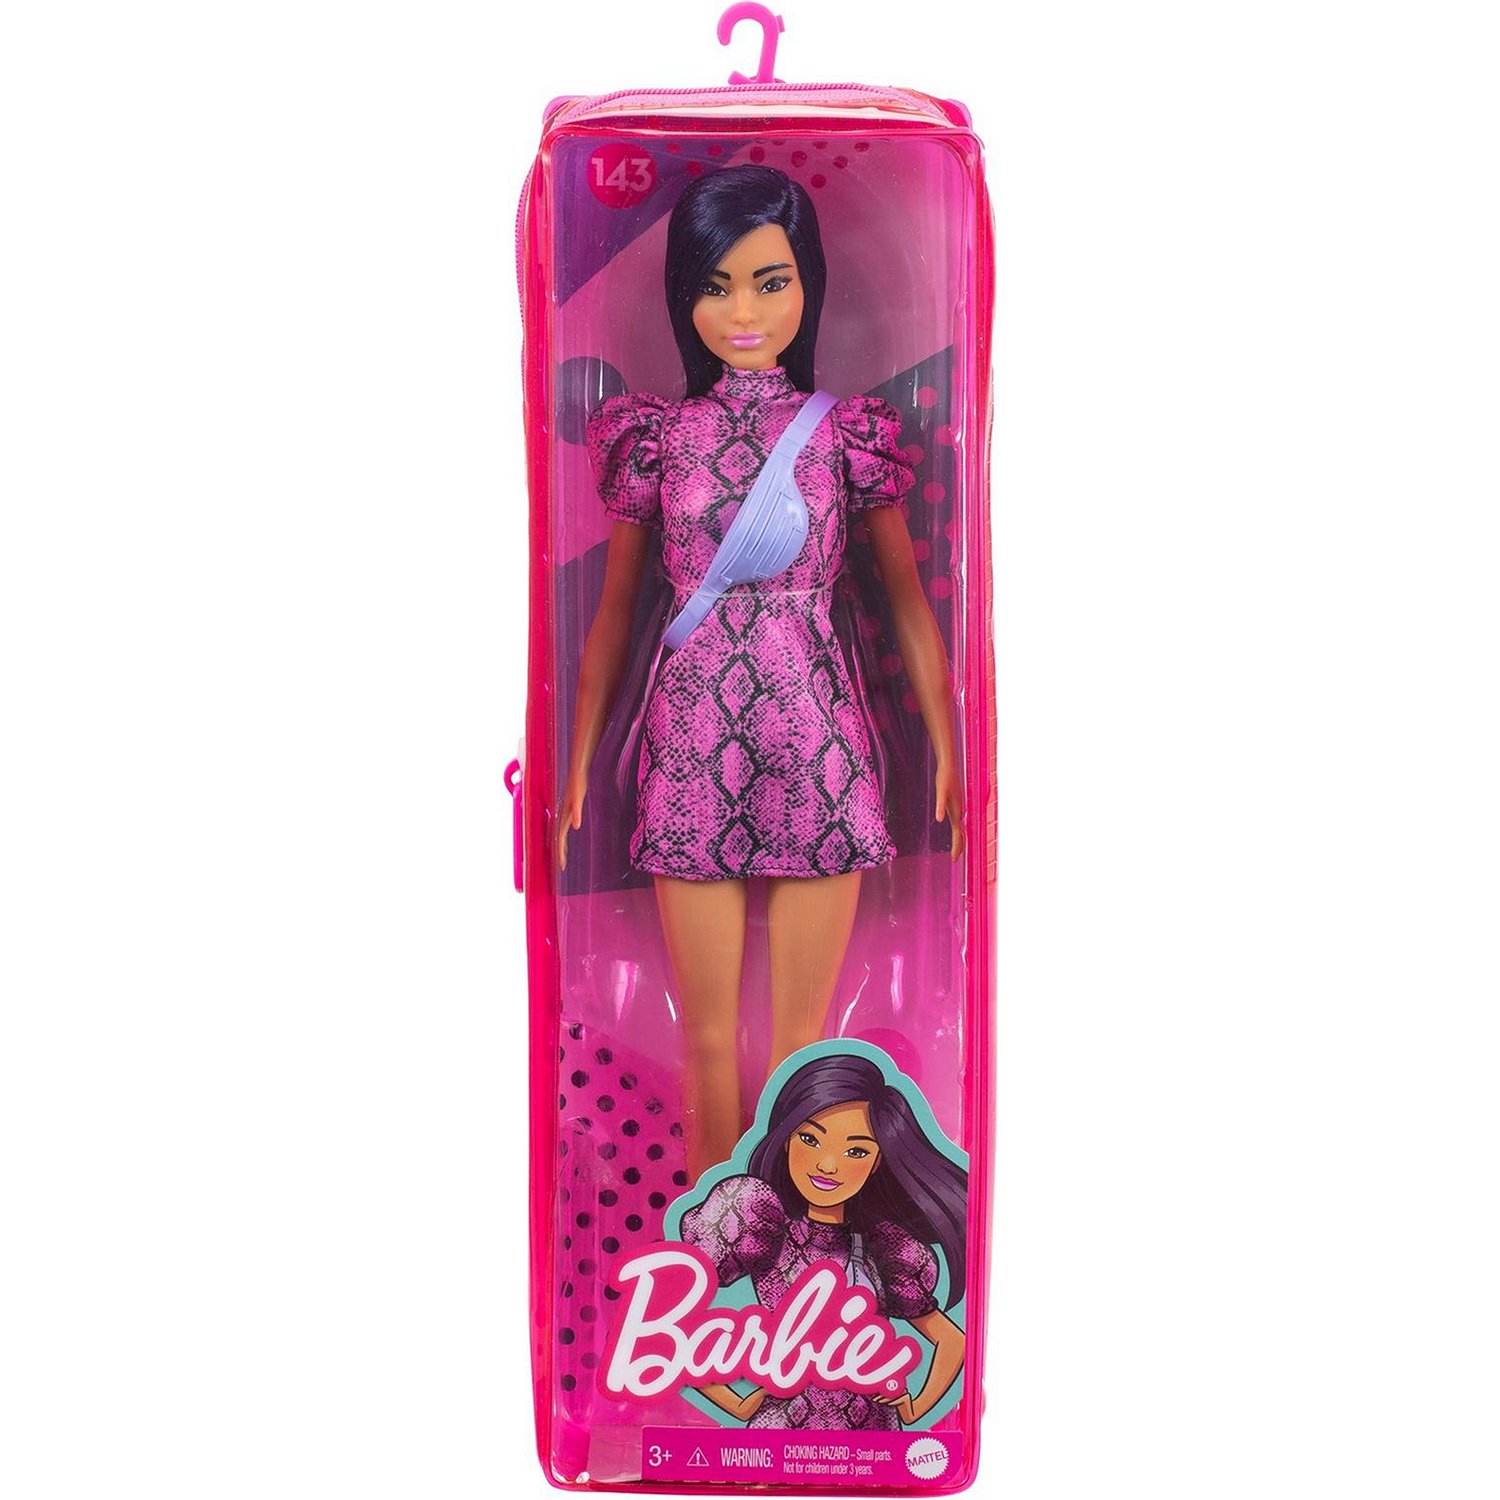 Кукла Barbie Игра с модой 143 GXY99 - фото 2